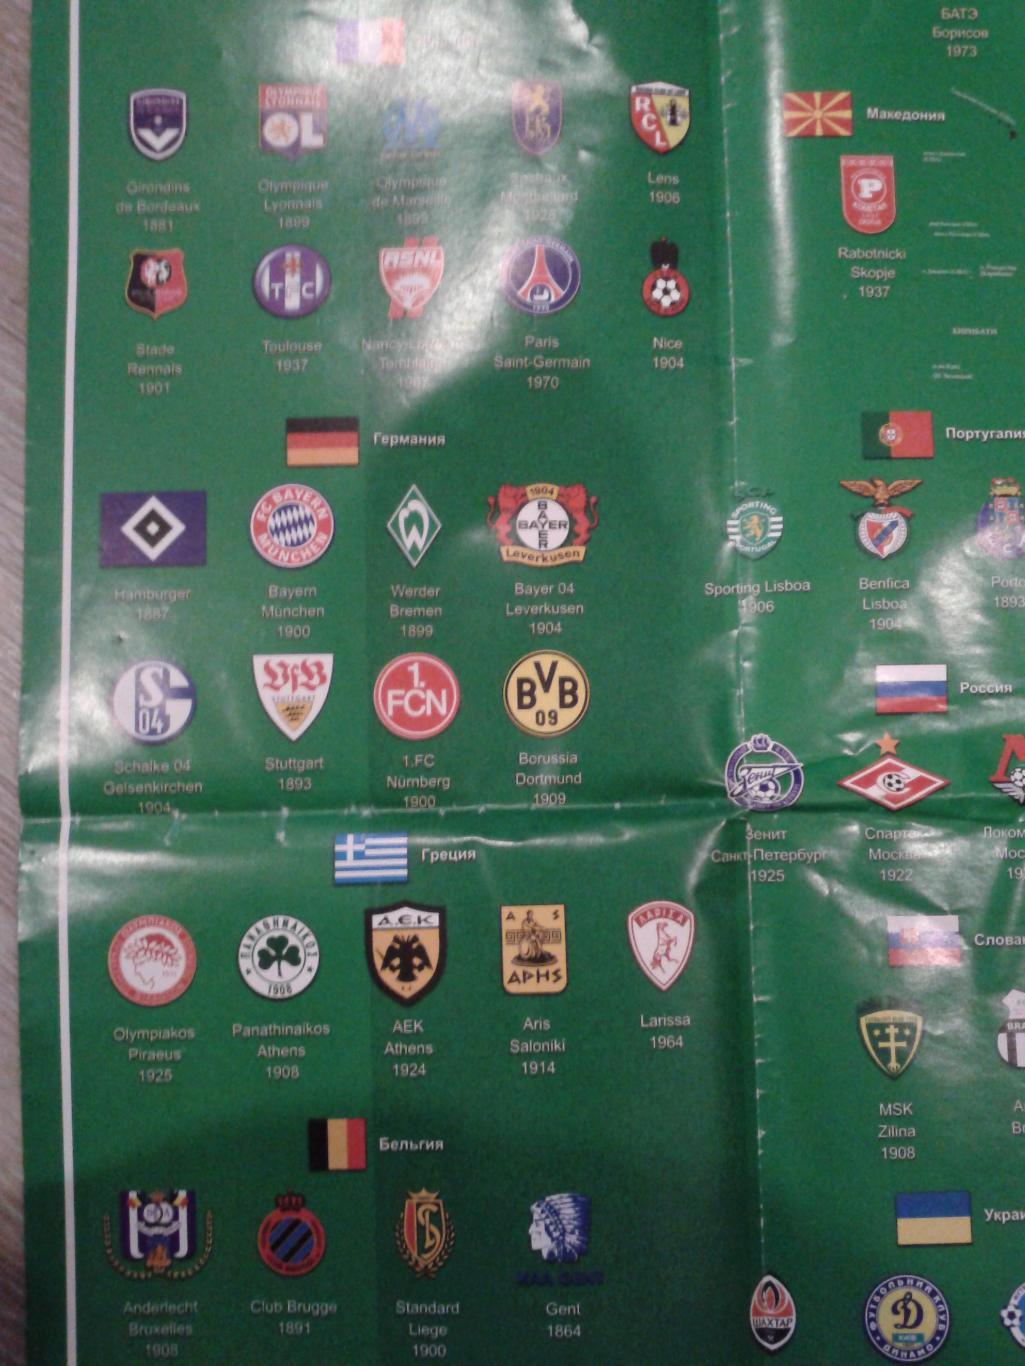 Лучшие футбольные клубы мира.Иллюстрированная карта 3